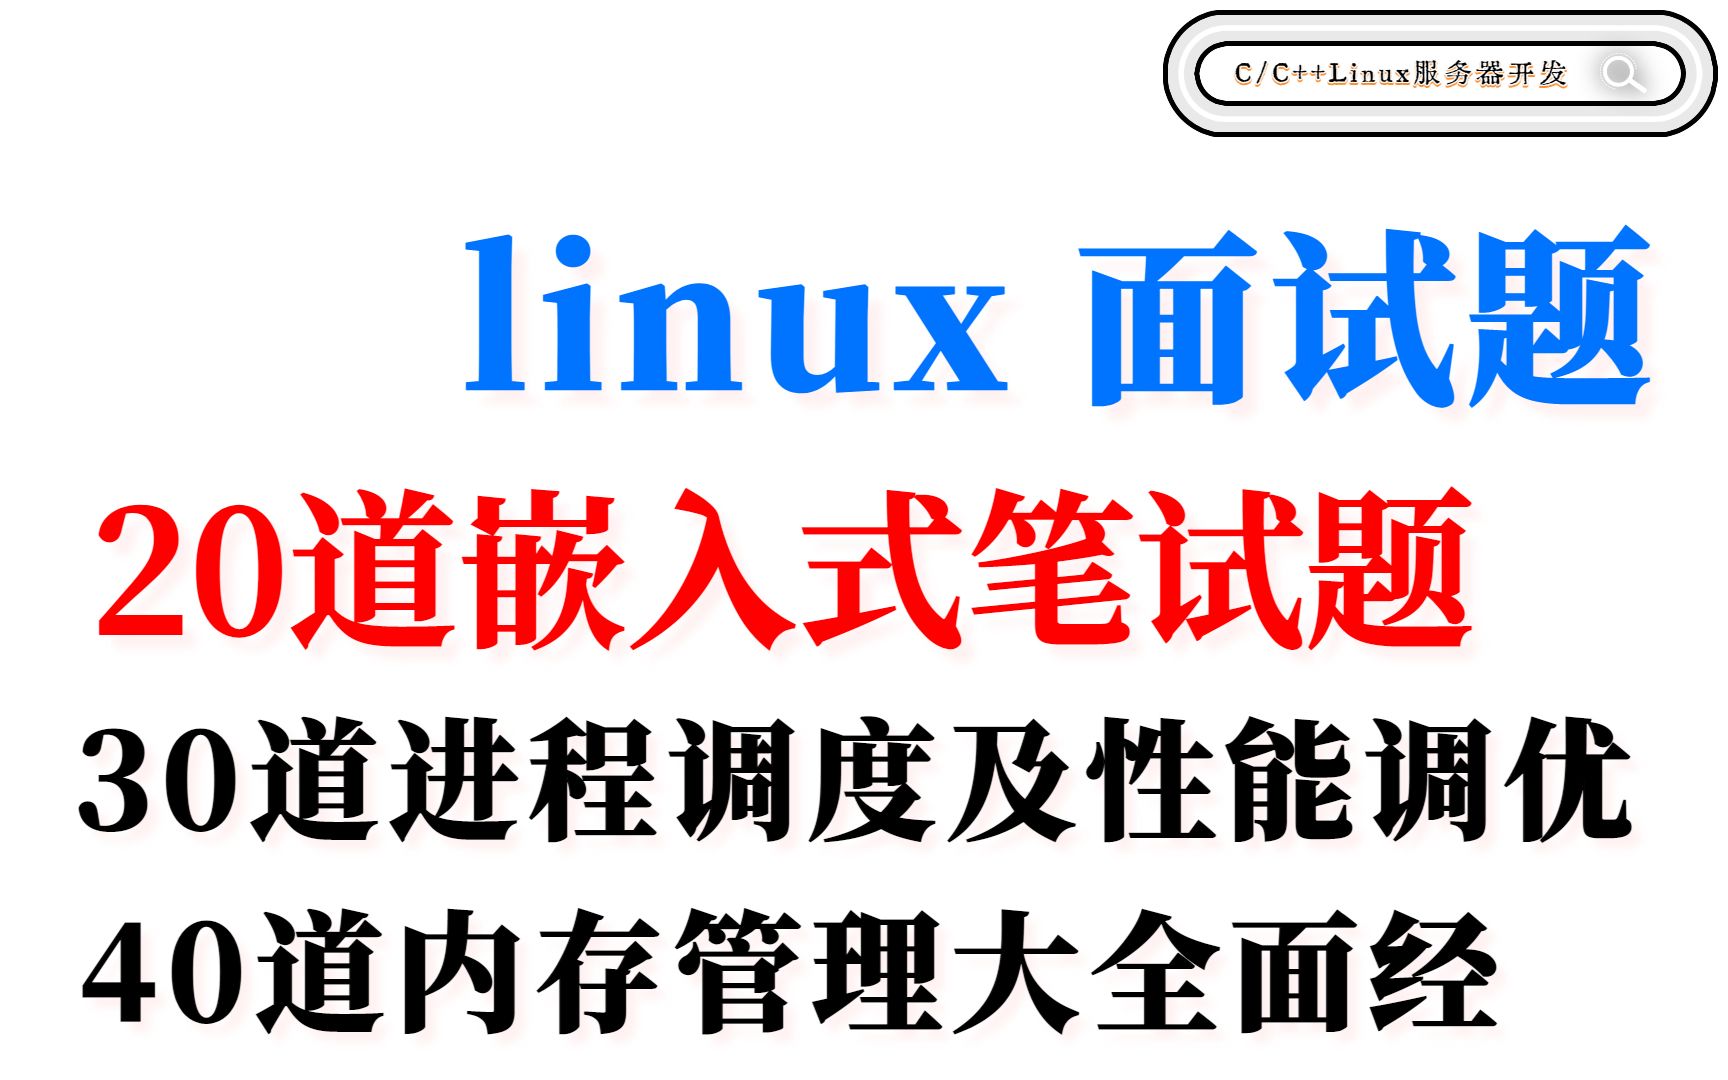 Linux100道面试题（10道内核同步与并发、20道嵌入式、30道进程调度、40道内存管理）